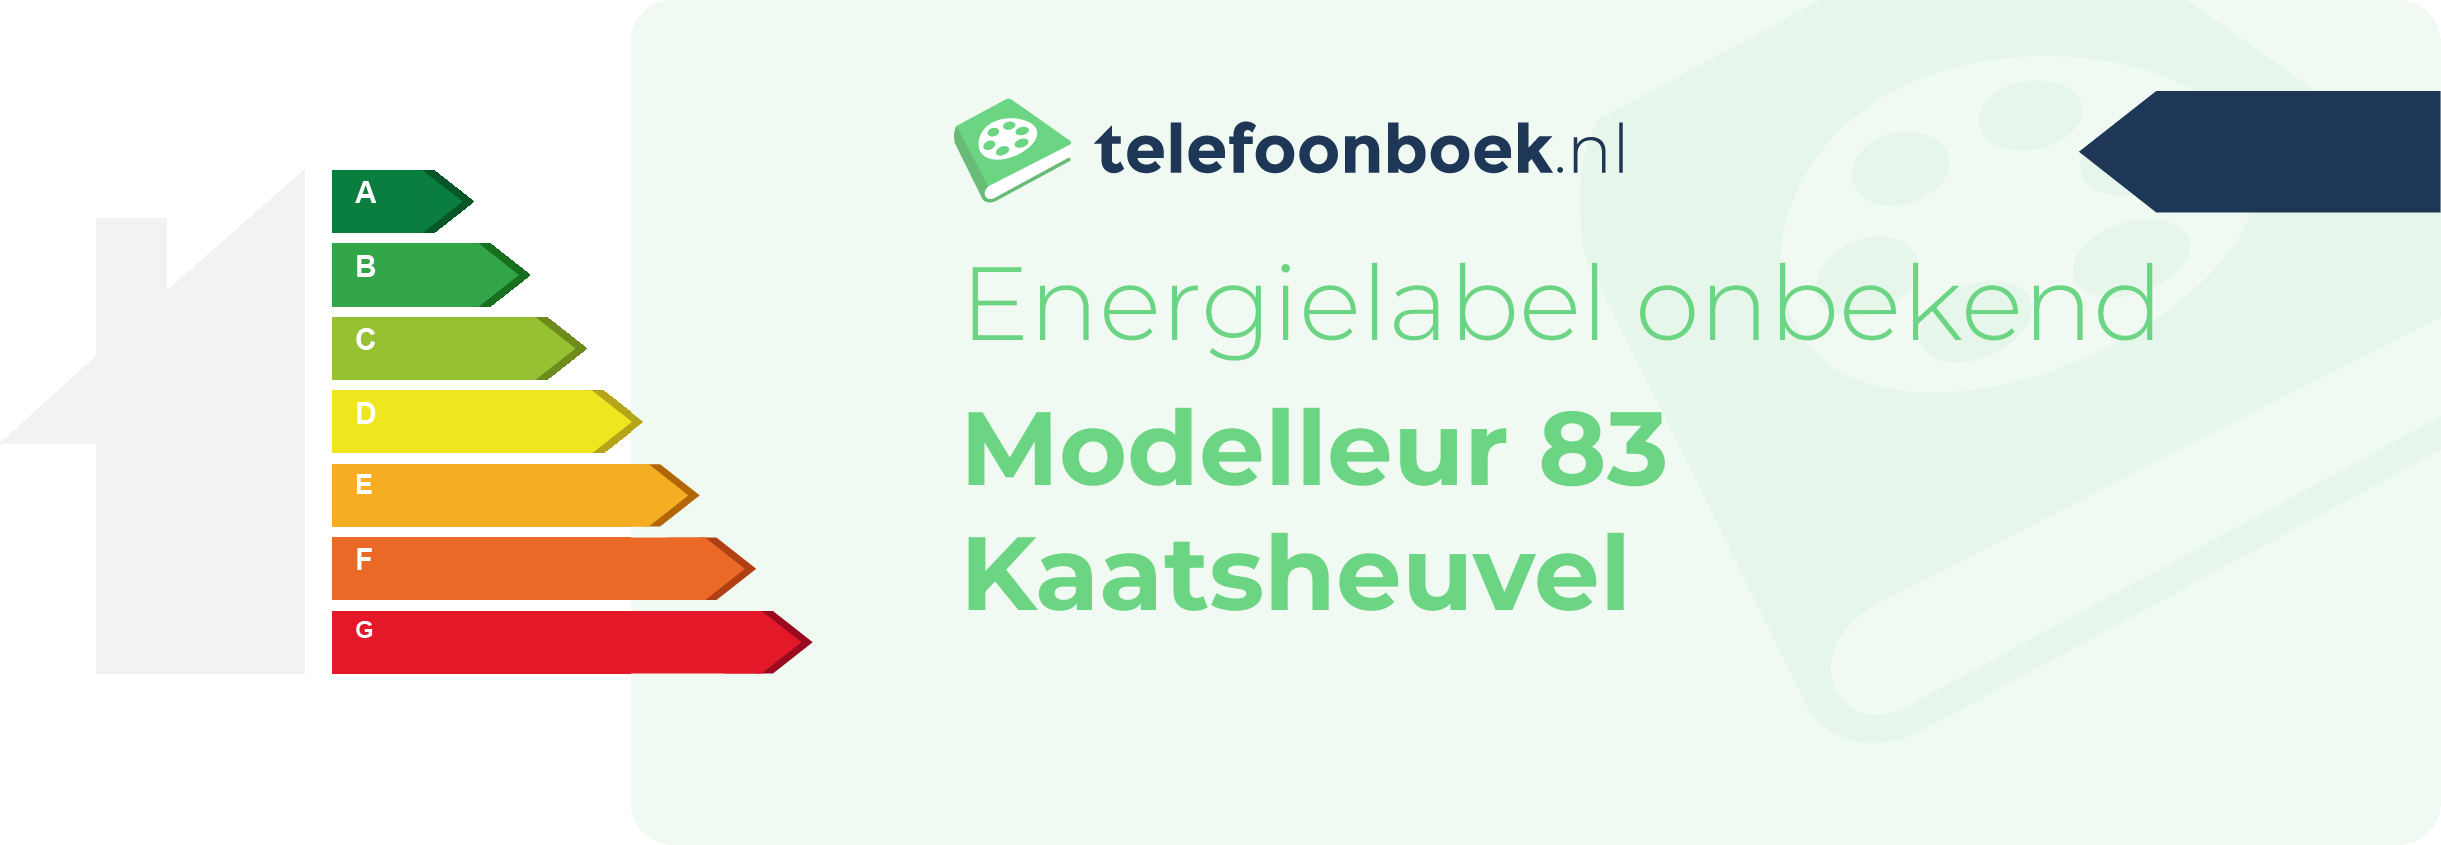 Energielabel Modelleur 83 Kaatsheuvel